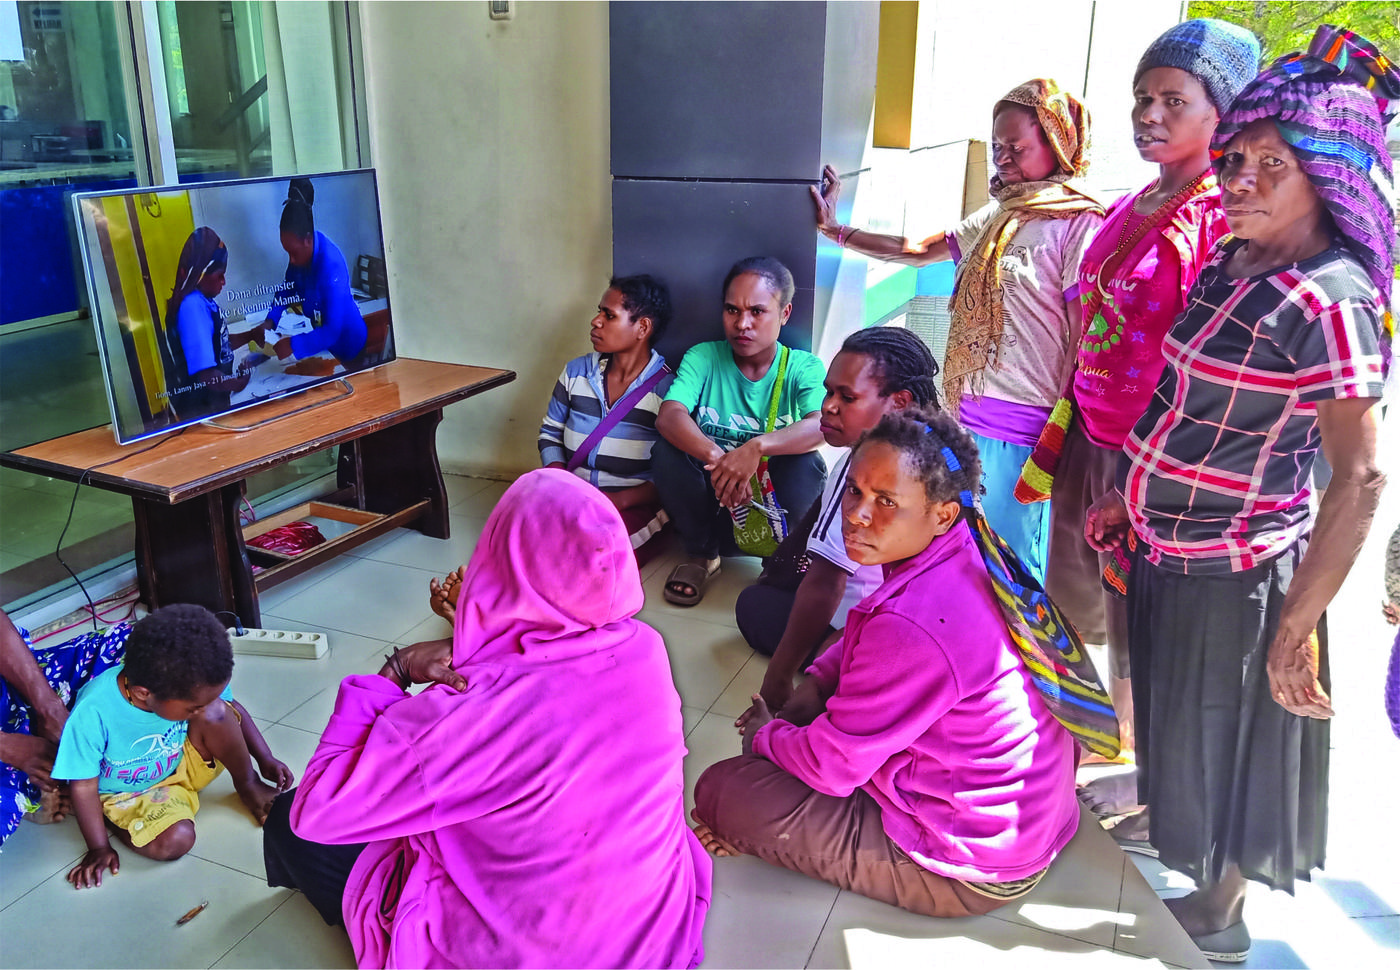   Nicodemus Wanma (kiri) Para ibu penerima manfaat  menyaksikan video sosialisasi pembayaran dan pemanfaatan  dana BANGGA Papua (kanan).  Foto : Syaifullah/Yayasan BaKTI